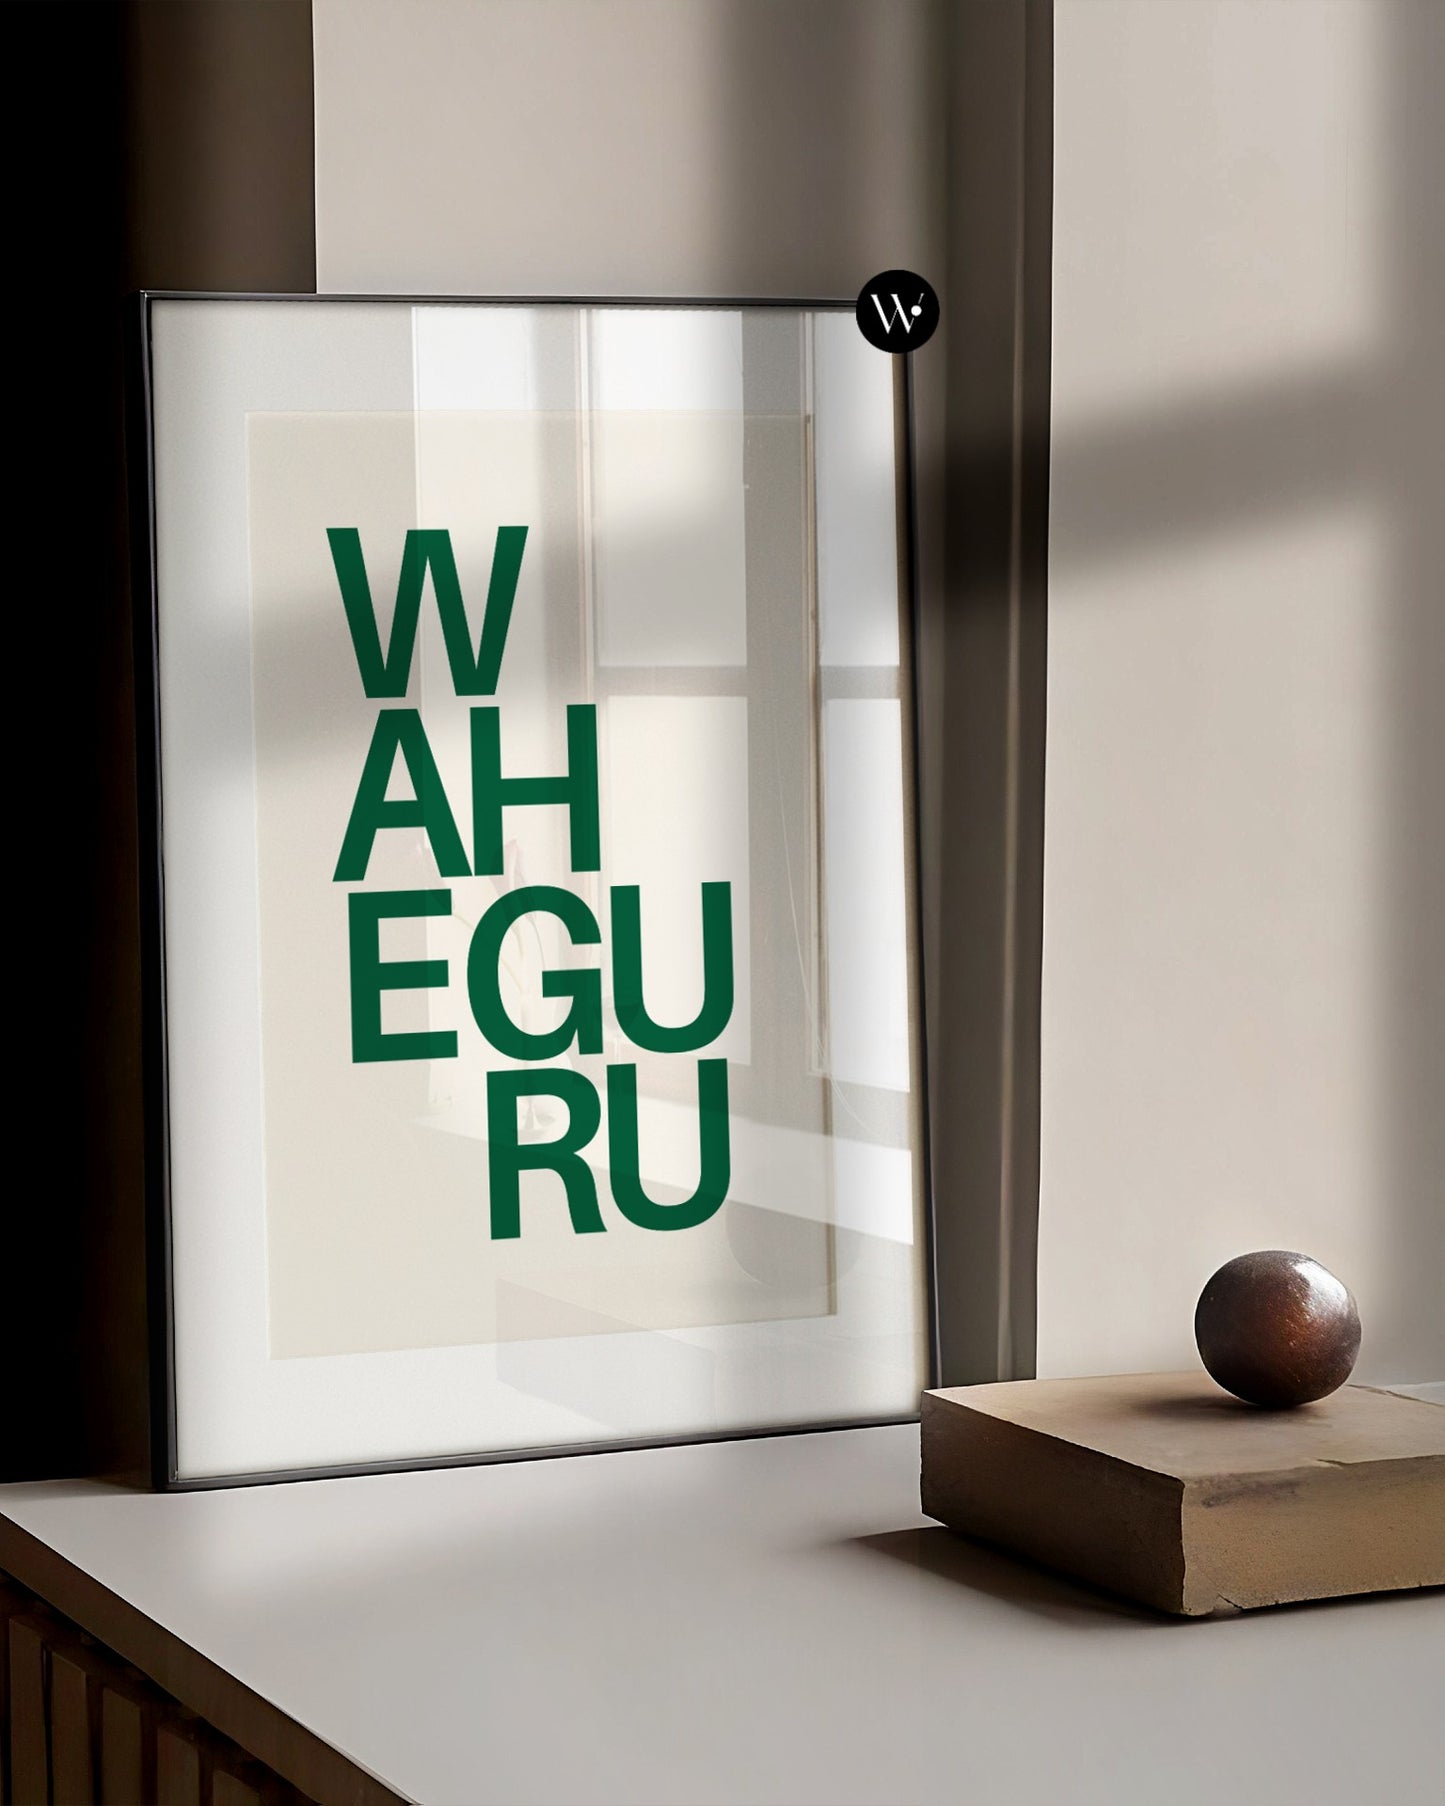 Waheguru Poster Print